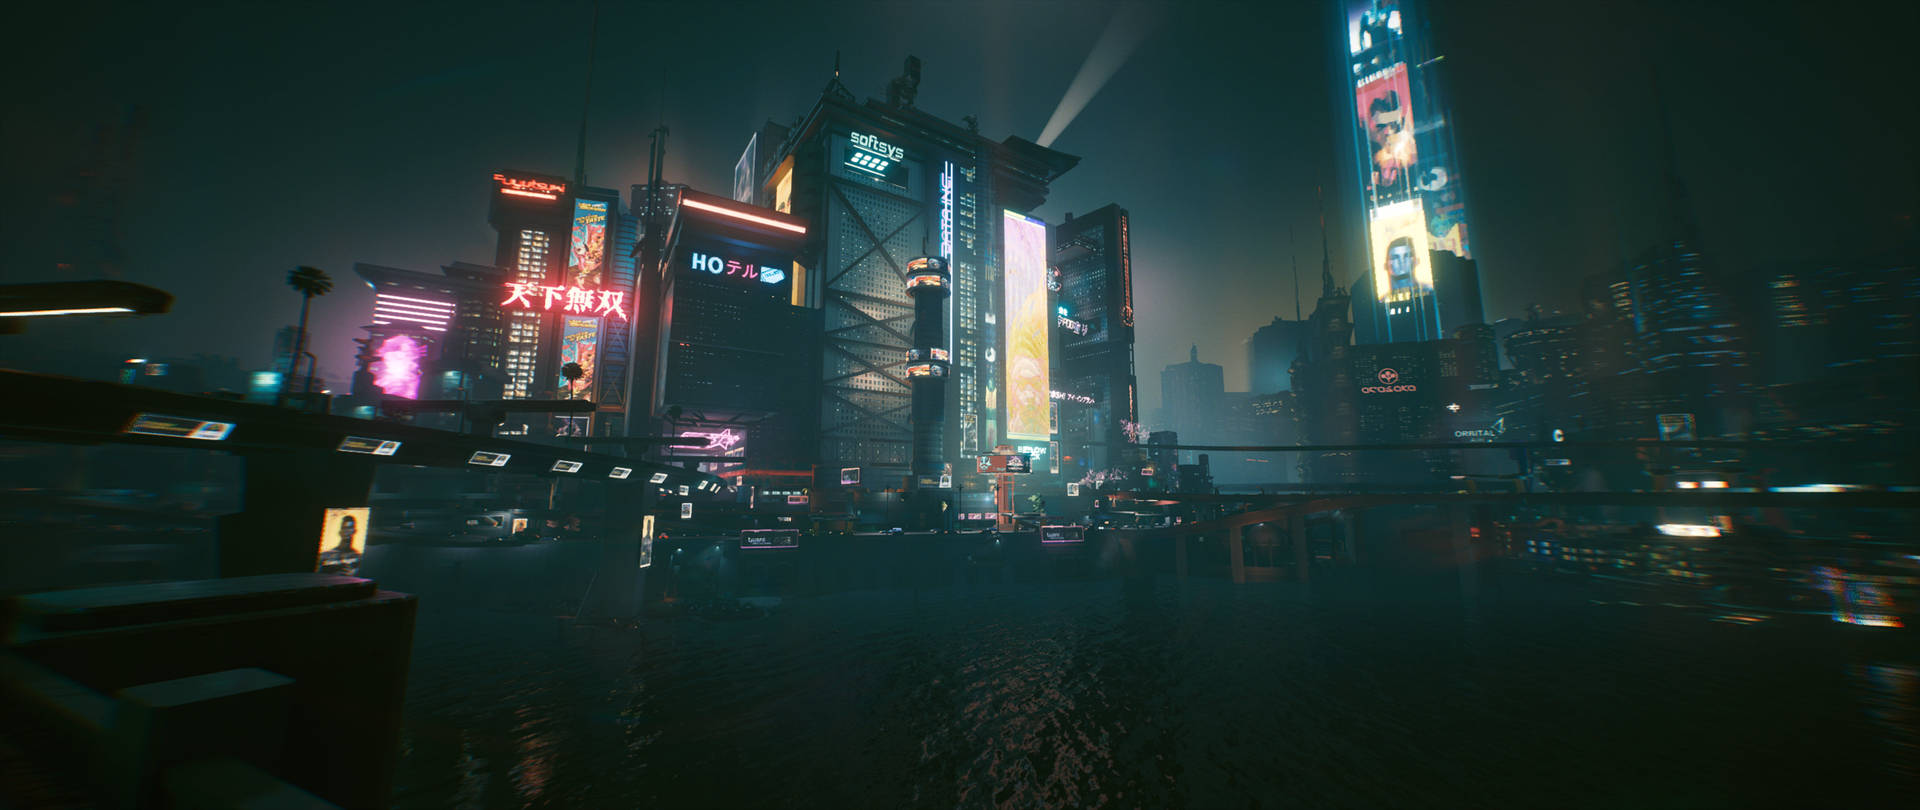 Ultrawide Cyberpunk Night City Background